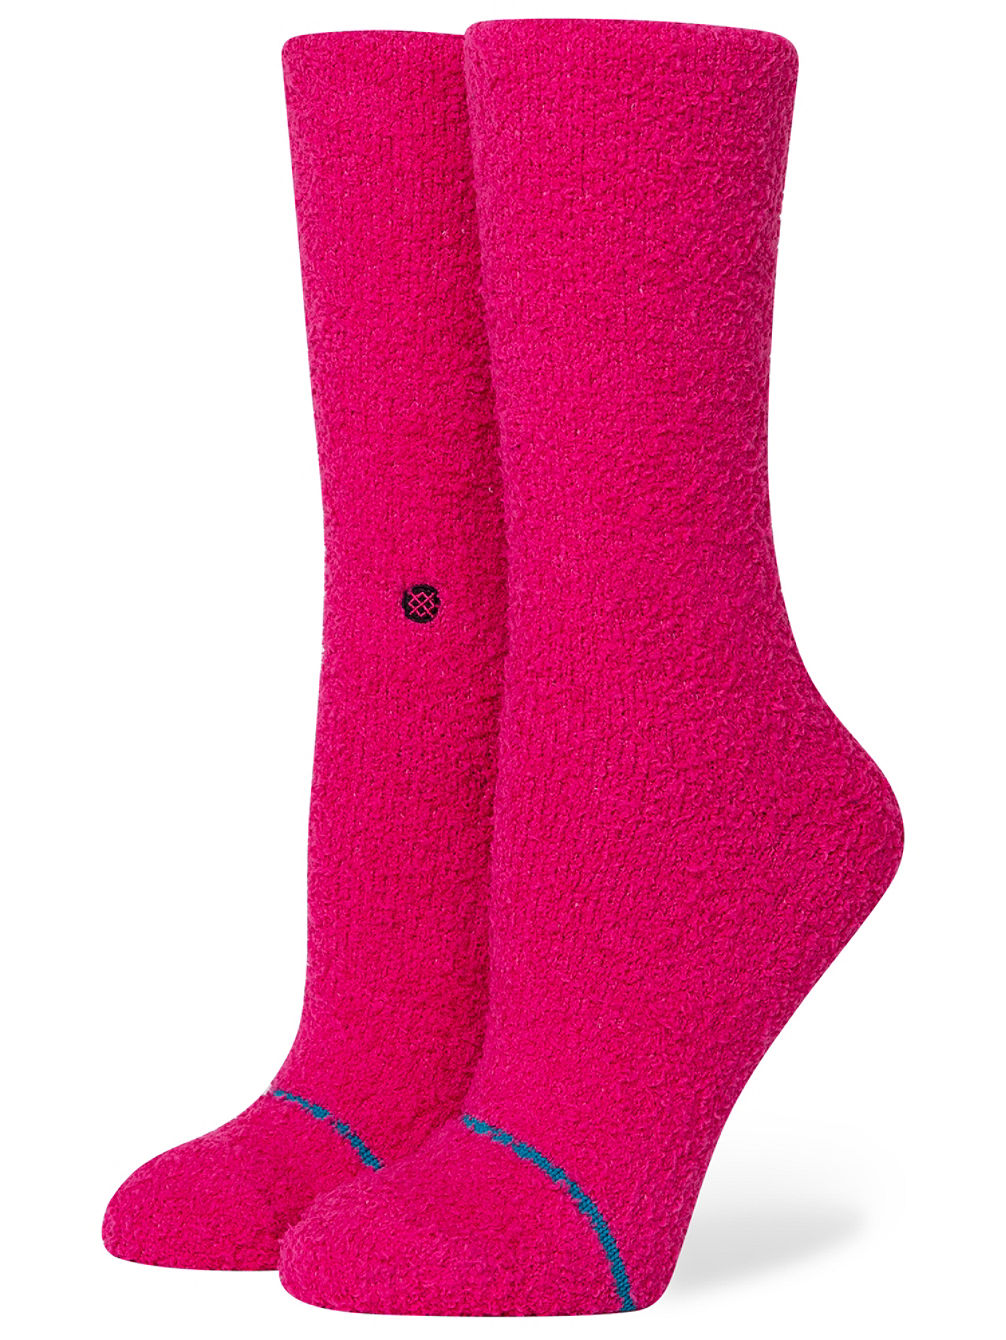 Warm Fuzzies Socks